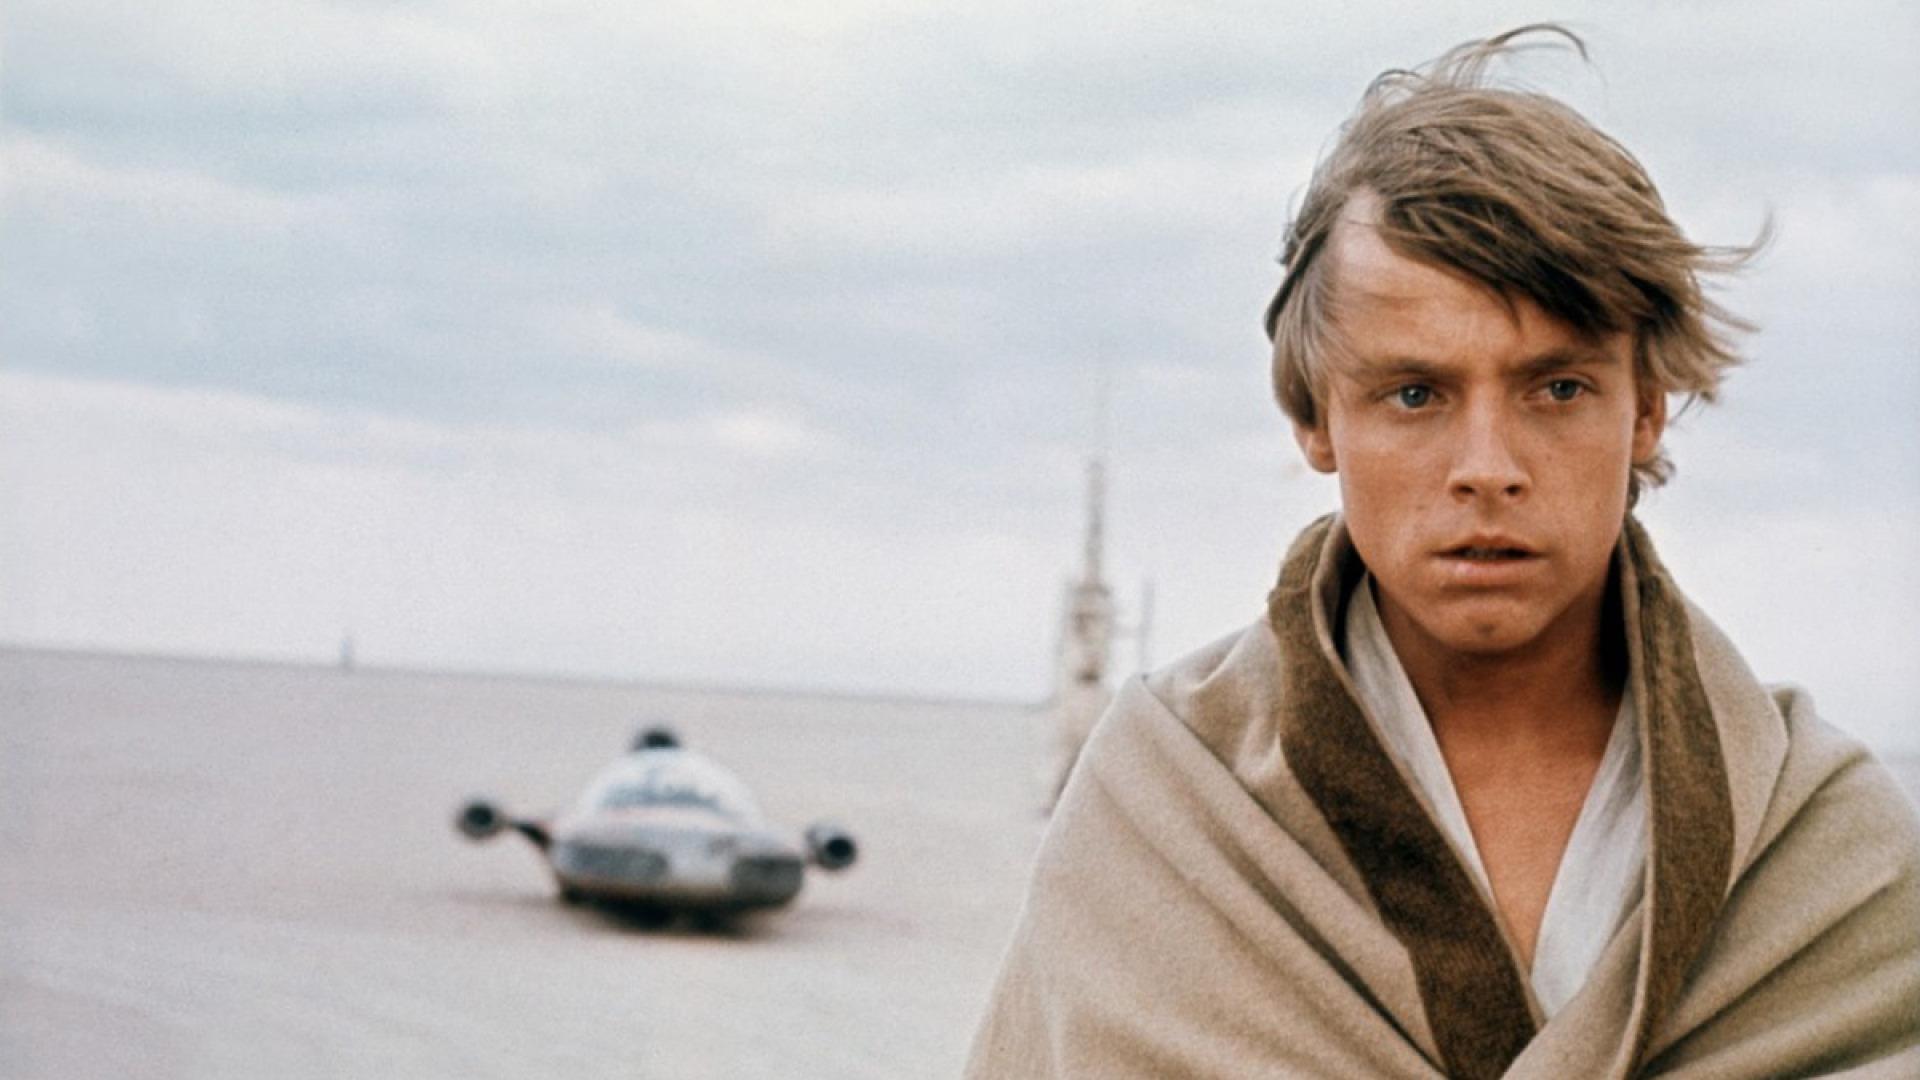 Luke Skywalker stands alone on Tatooine in Star Wars.